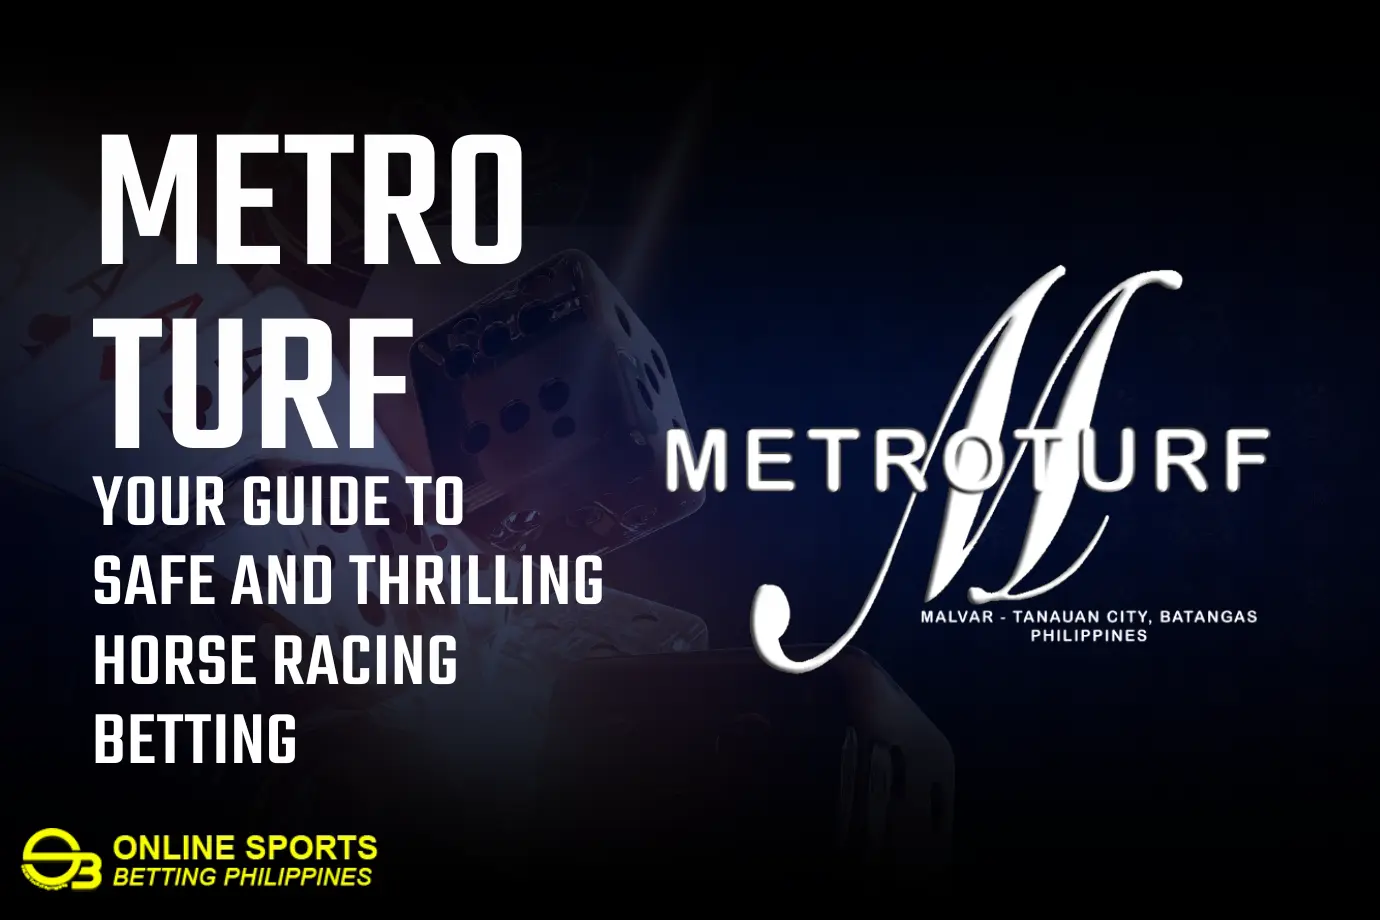 metro turf online betting